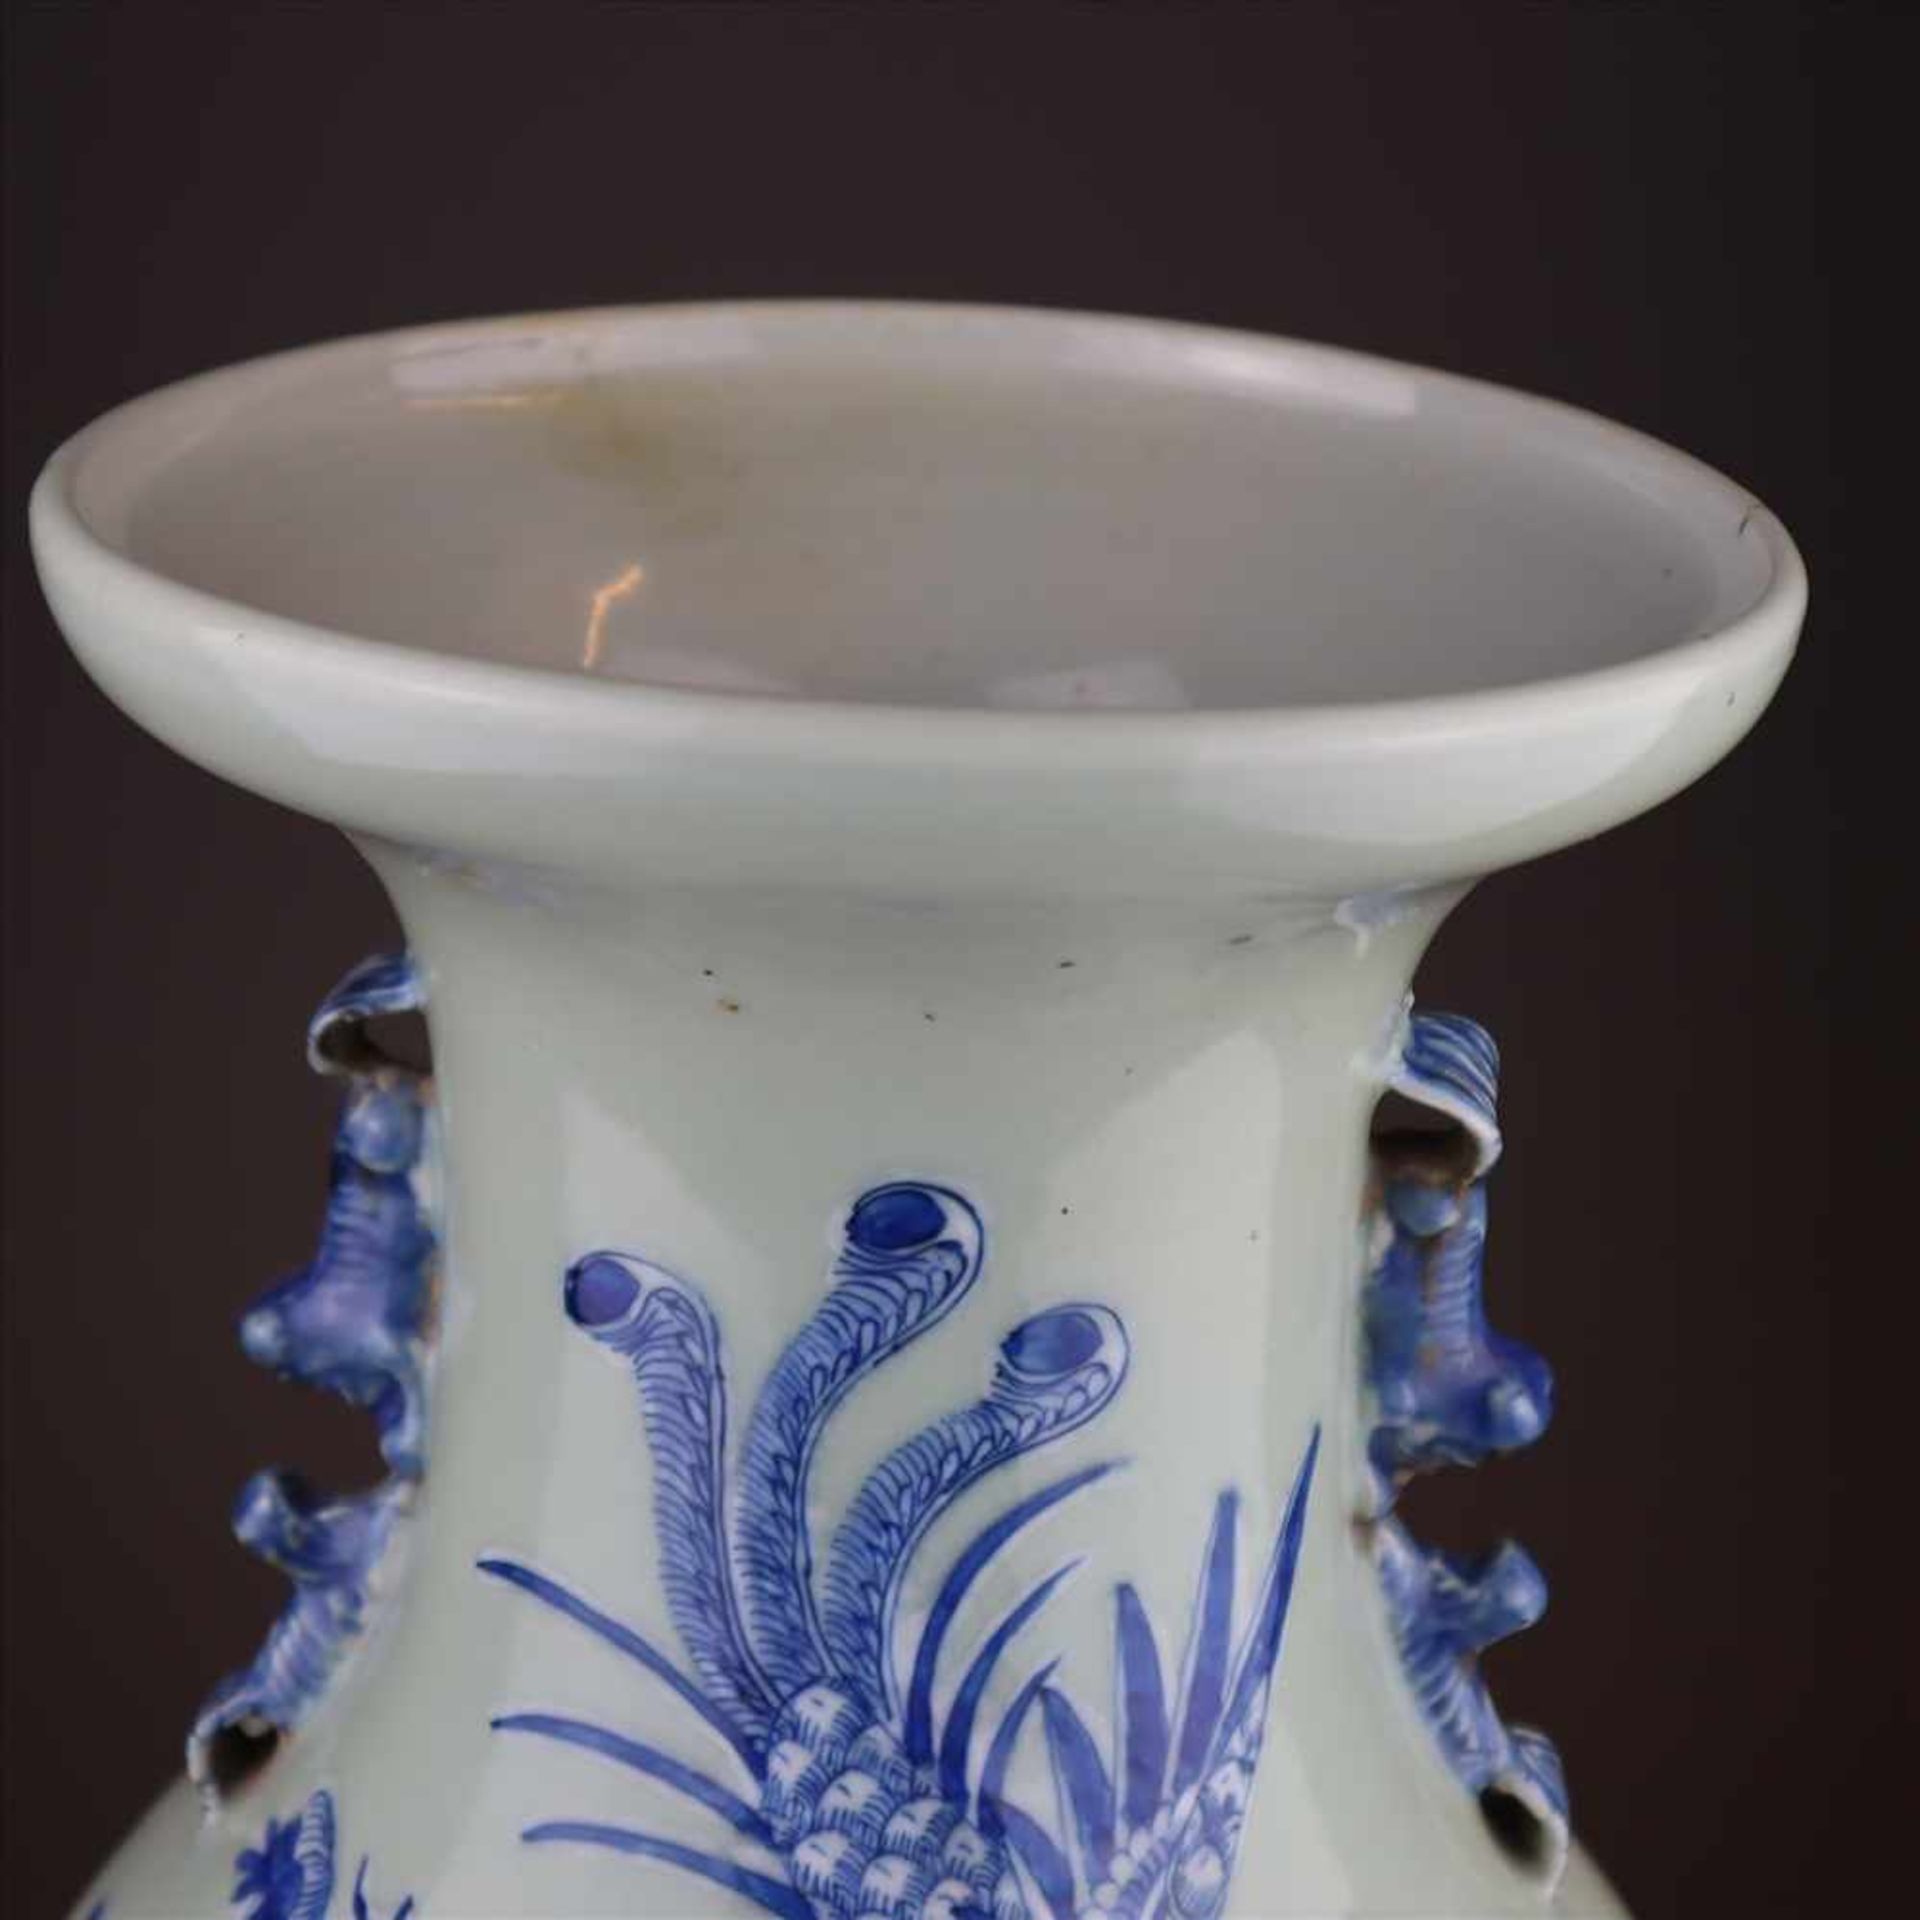 Bodenvase - China, Porzellan mit Blau-Weiß Dekor auf Seladongrund, schauseitig Floraldekor mit - Bild 2 aus 8